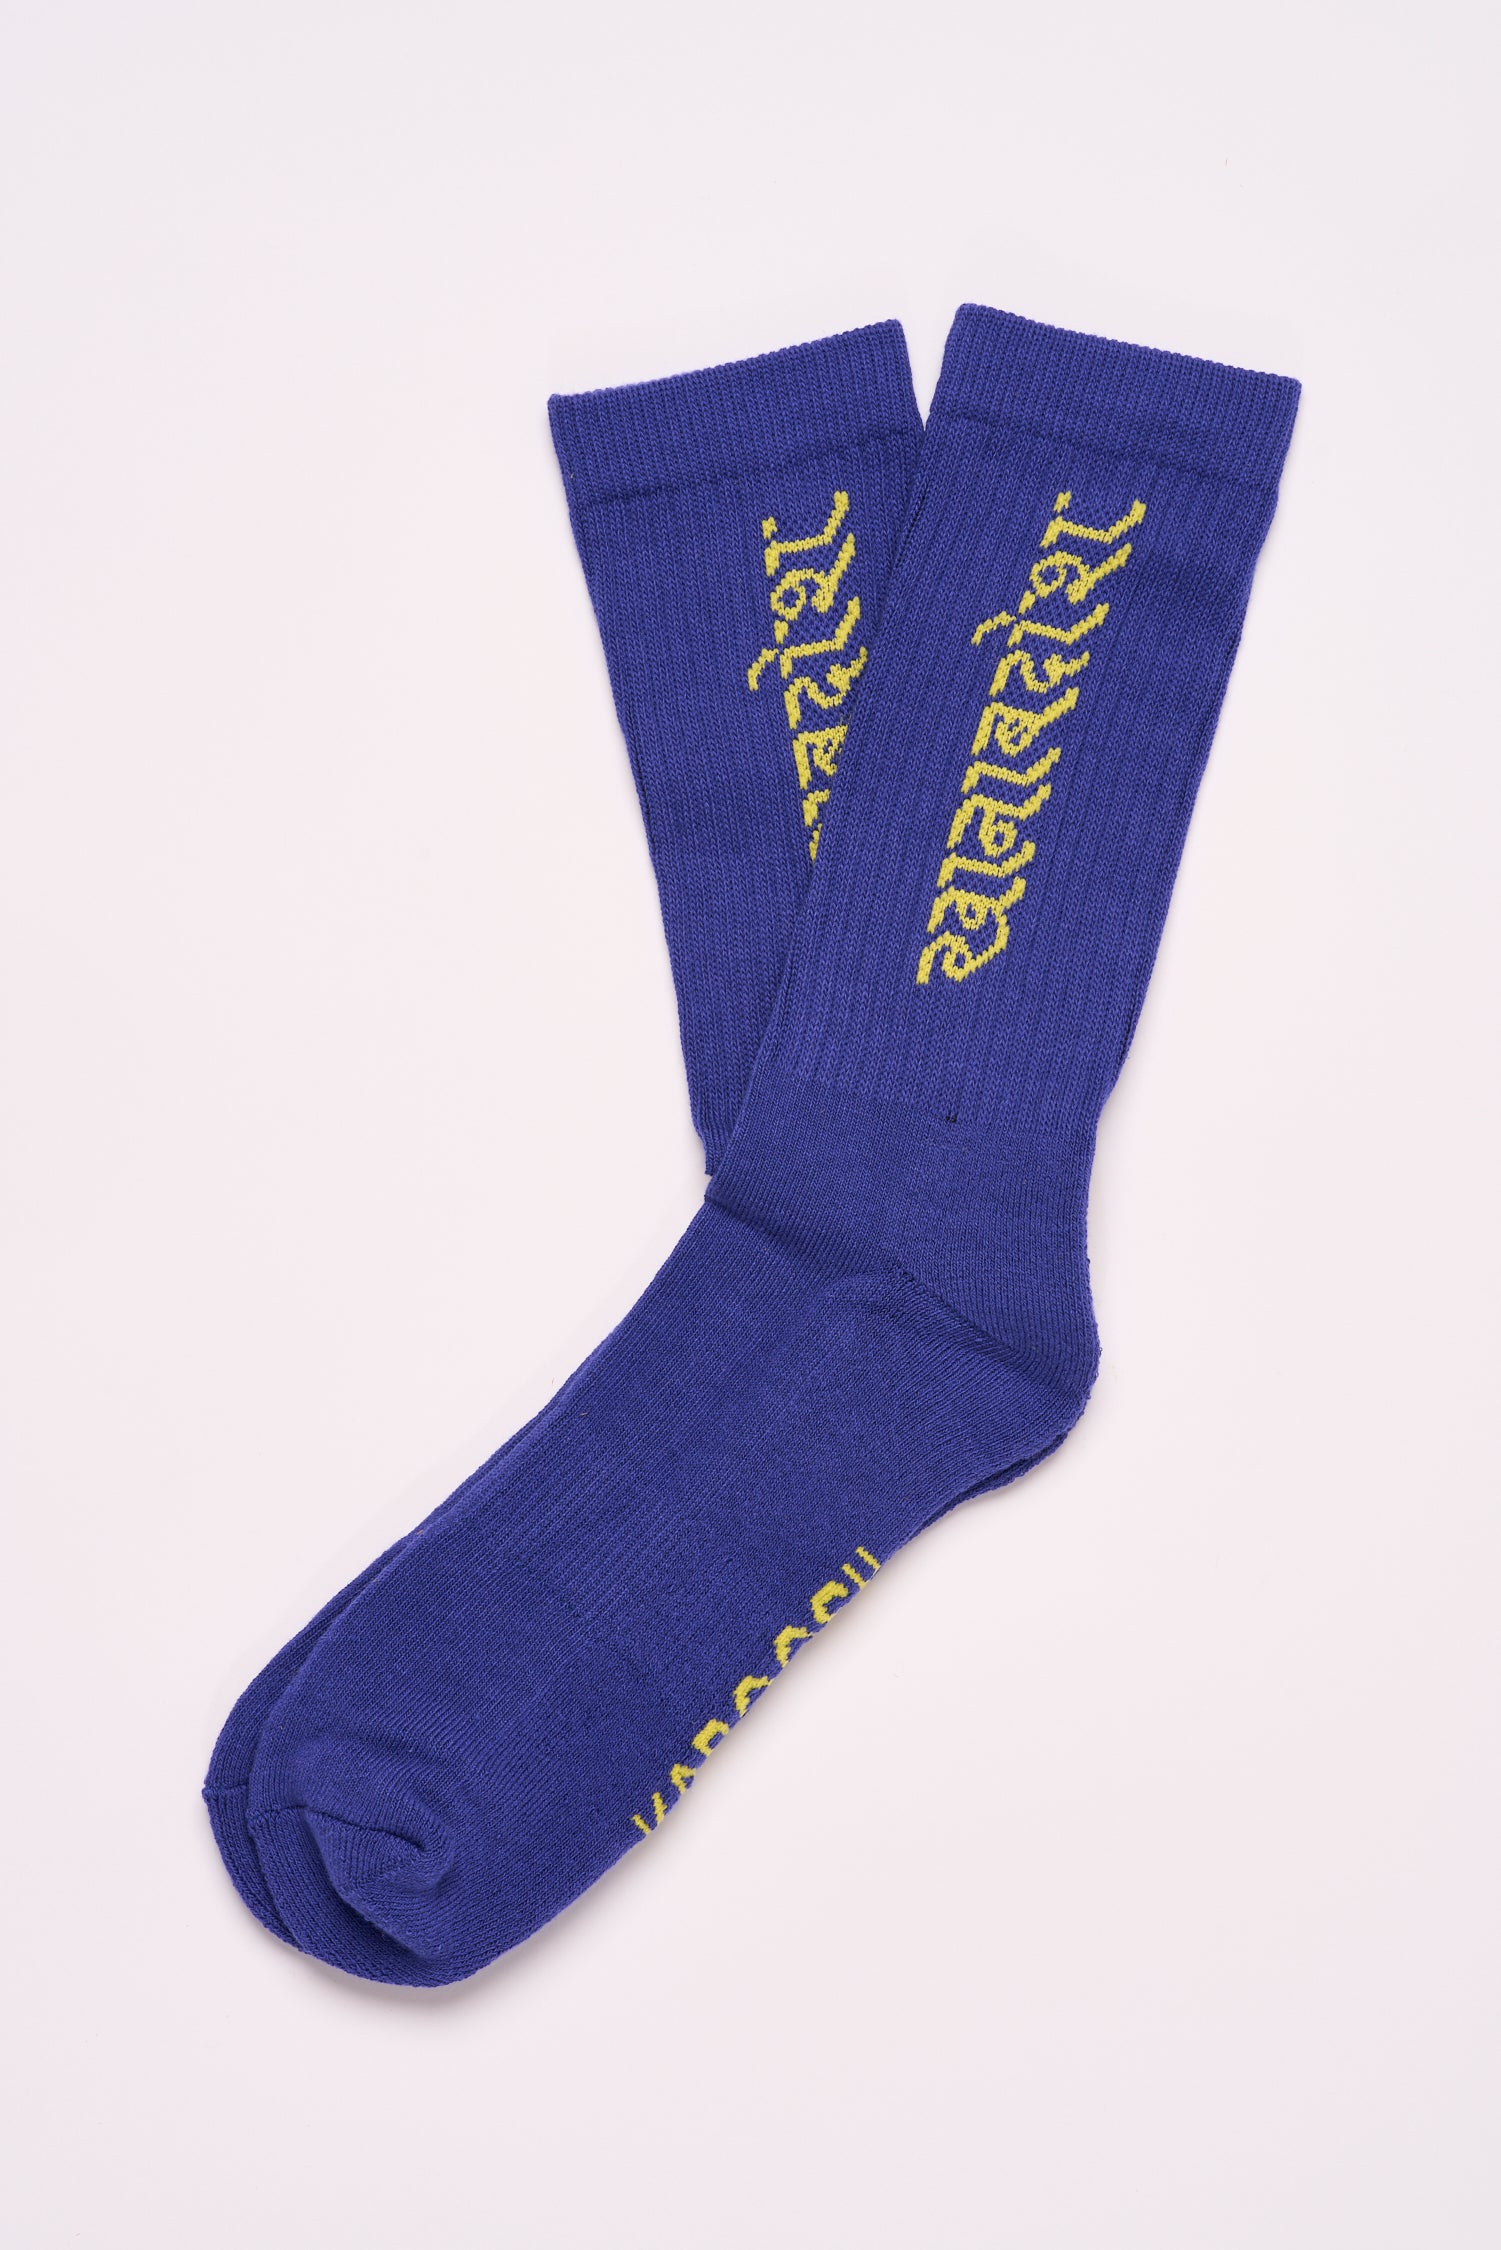 Socks - Hindi - Royal Blue - one size - Unisex